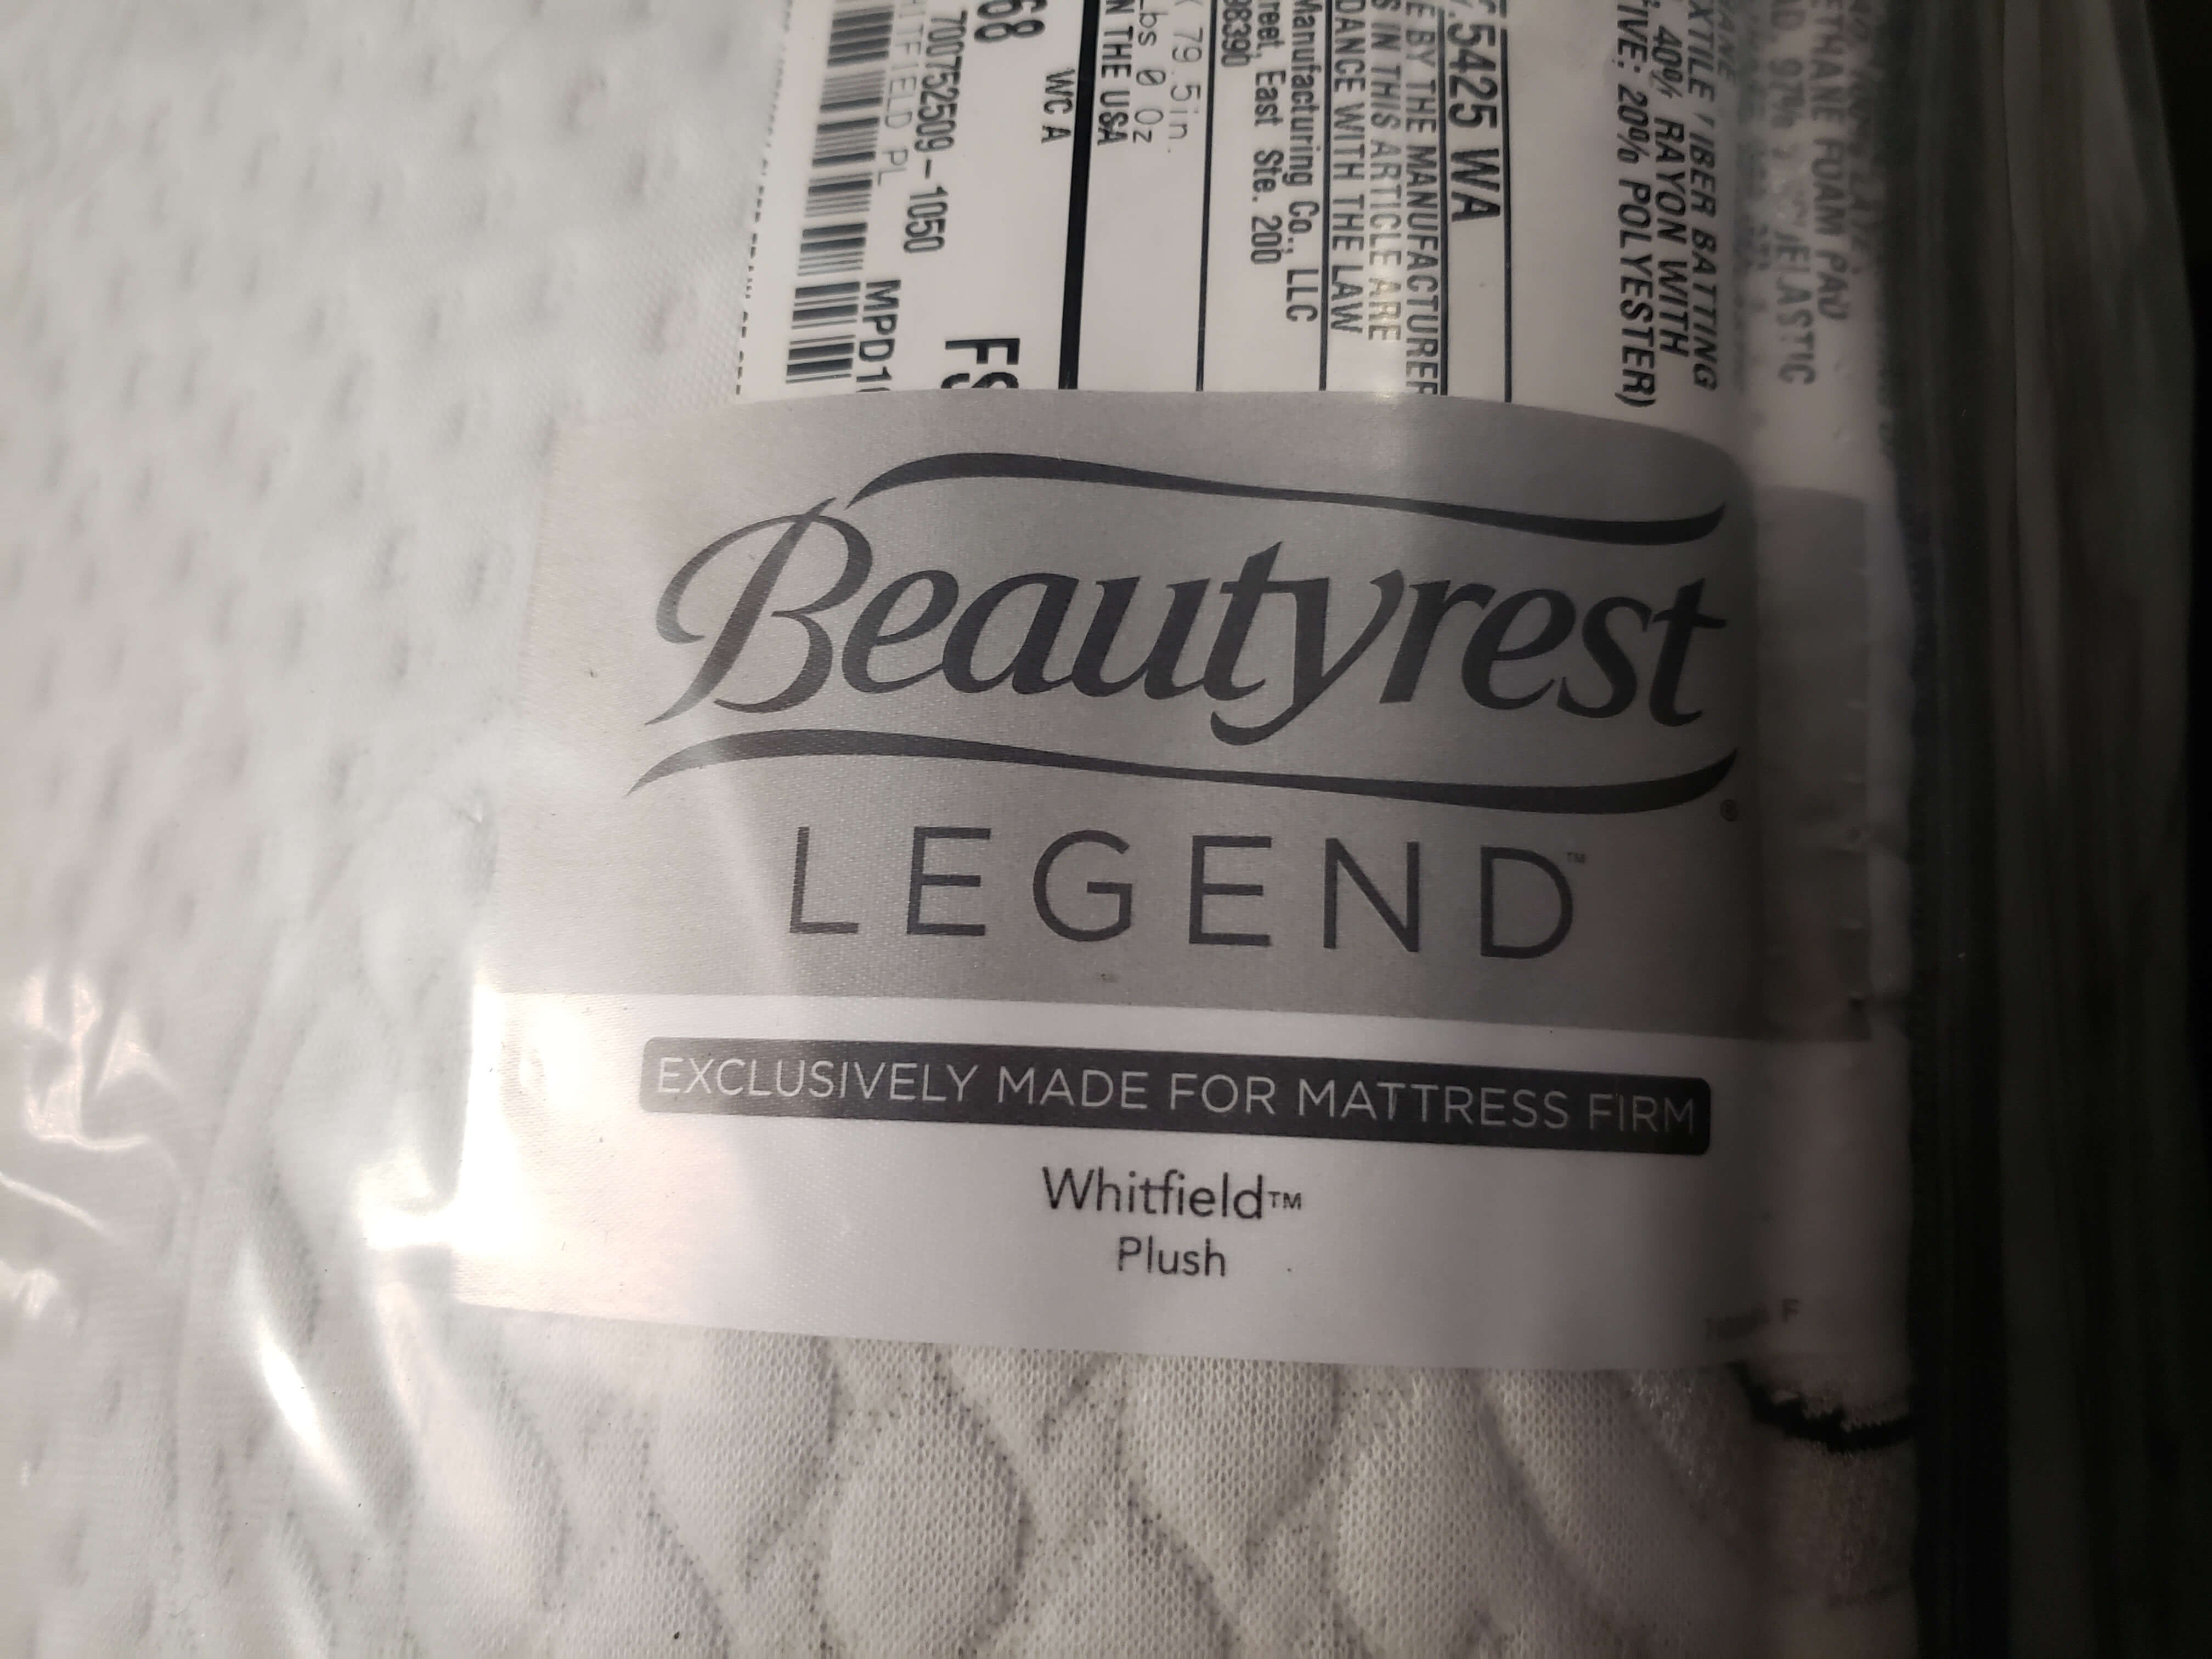 beautyrest legend mattress cover